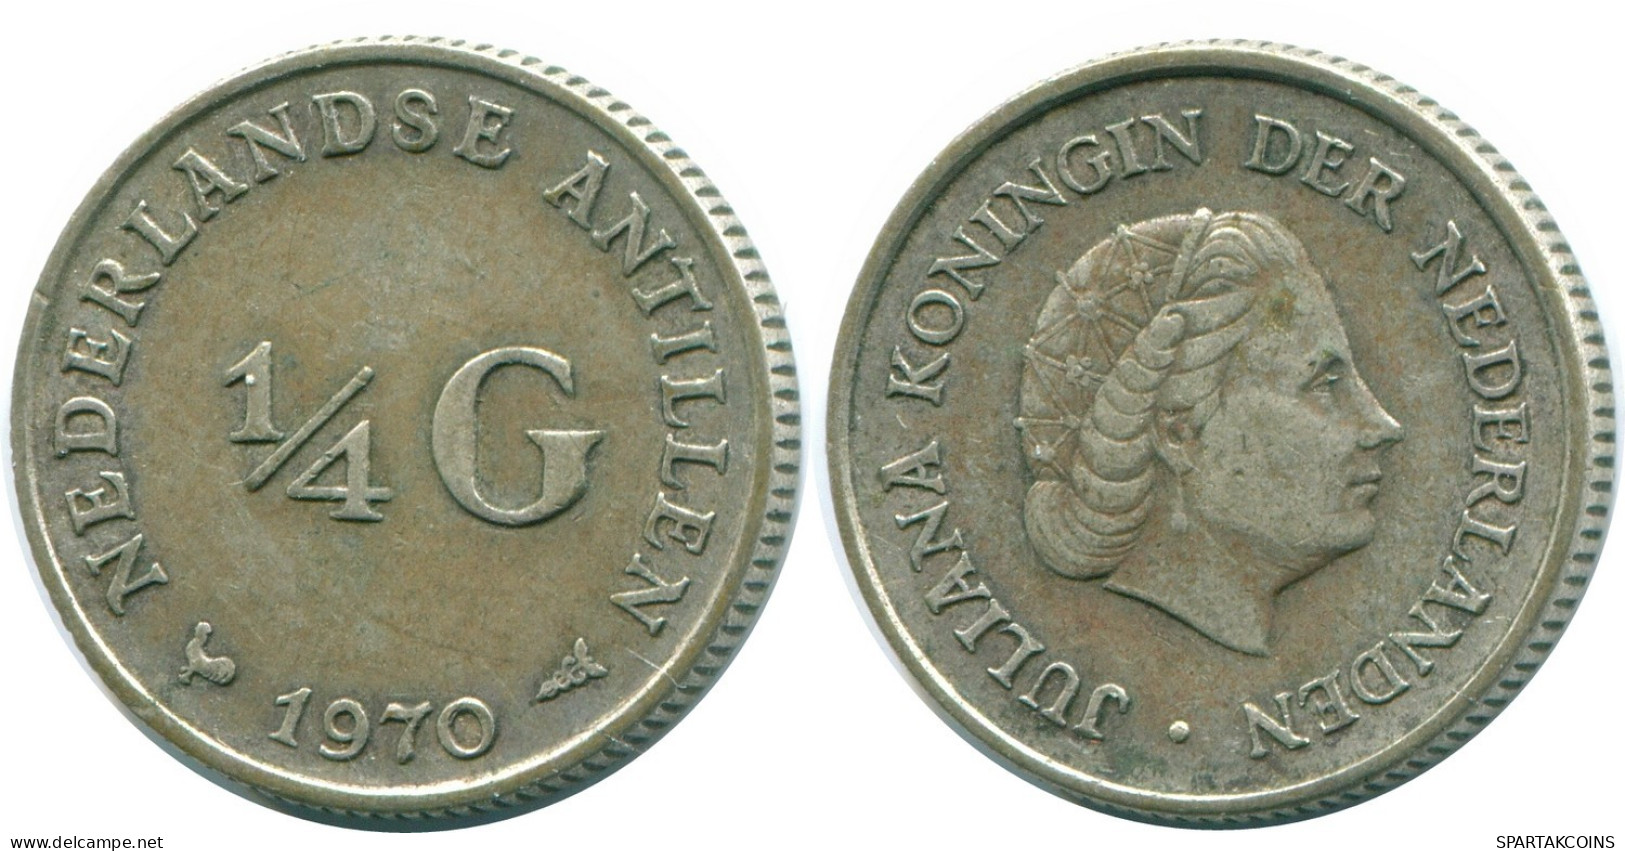 1/4 GULDEN 1970 NIEDERLÄNDISCHE ANTILLEN SILBER Koloniale Münze #NL11705.4.D.A - Antille Olandesi